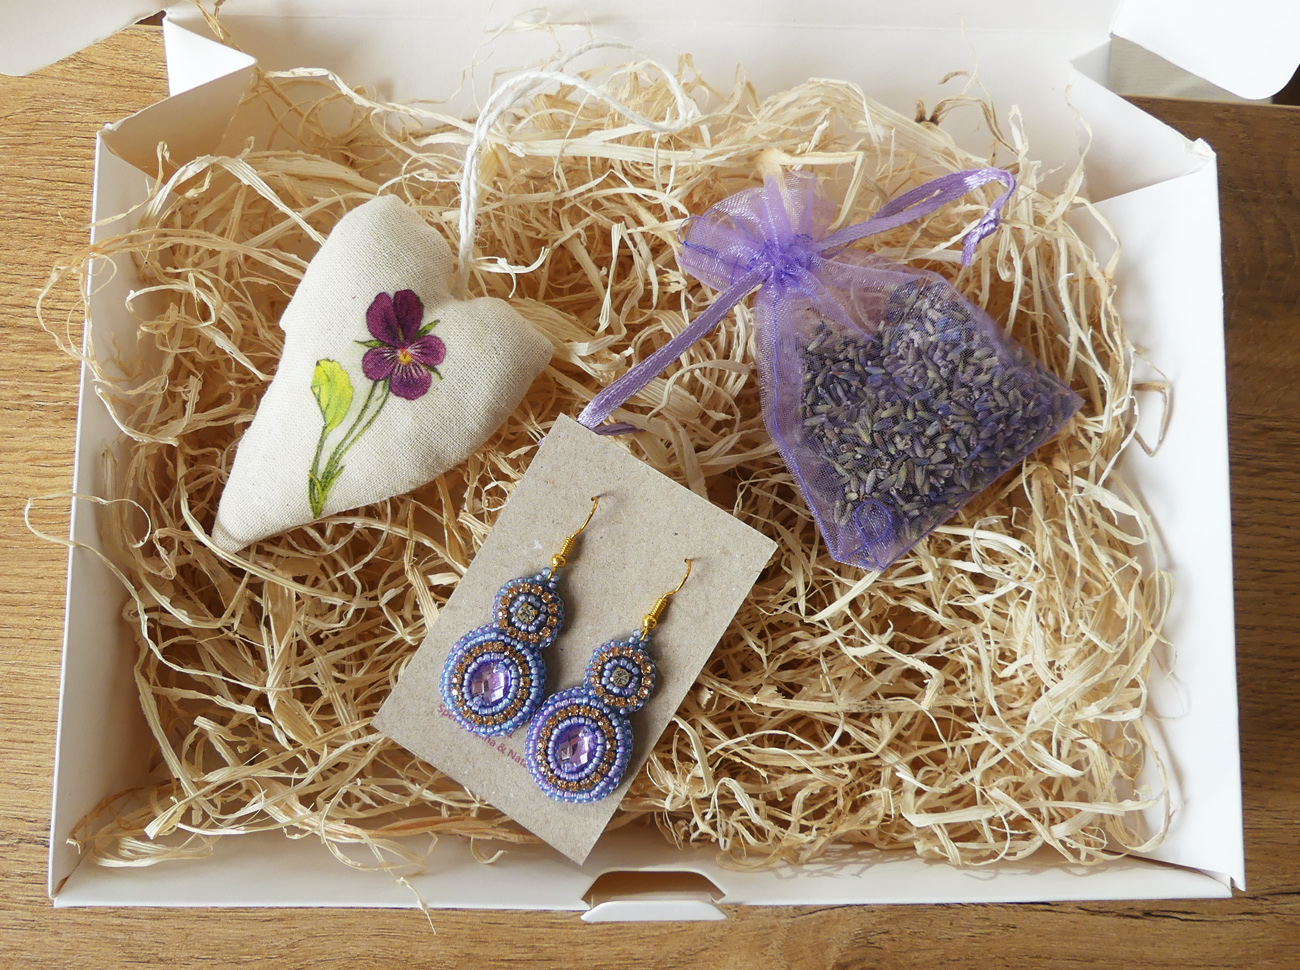 Levanduľový darčekový box pre ženy s elegantnými náušnicami a dekoráciami